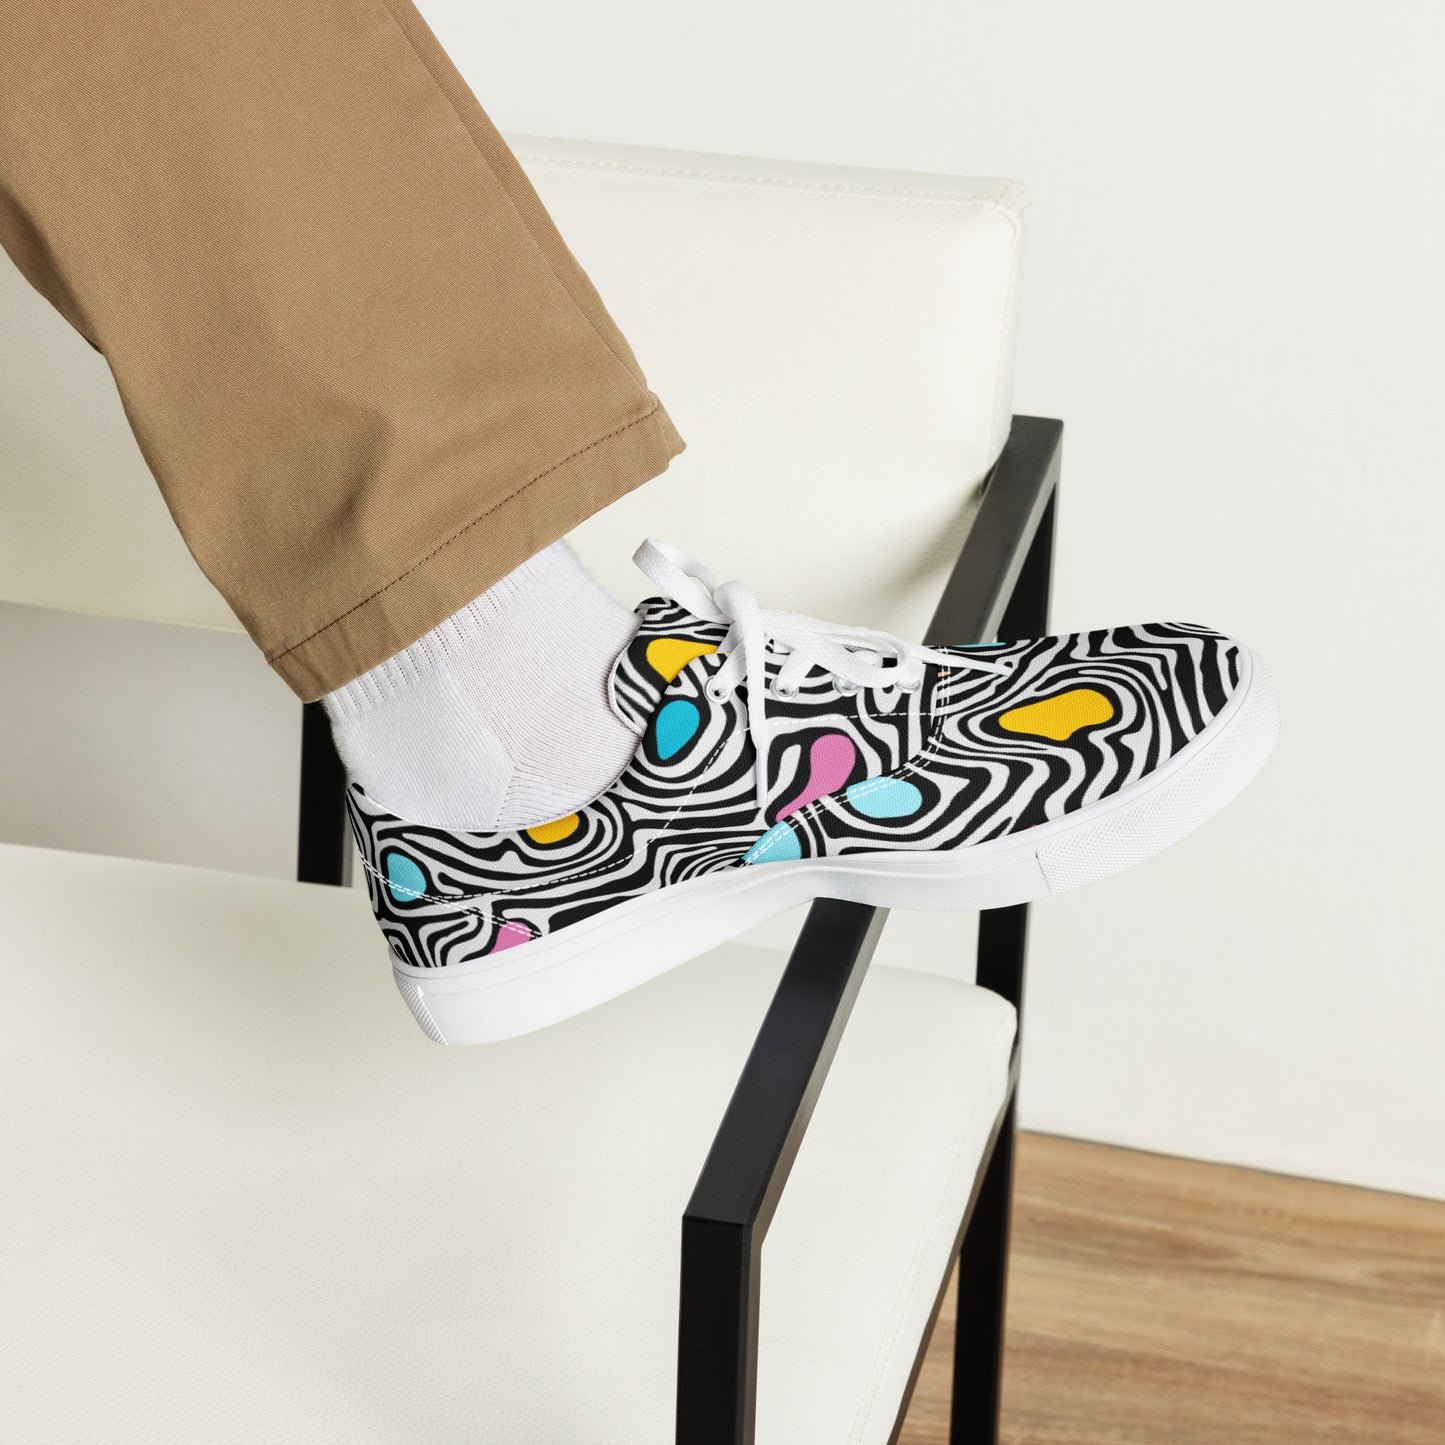 Trippy - Men’s lace-up canvas shoes Mens Lace Up Canvas Shoes